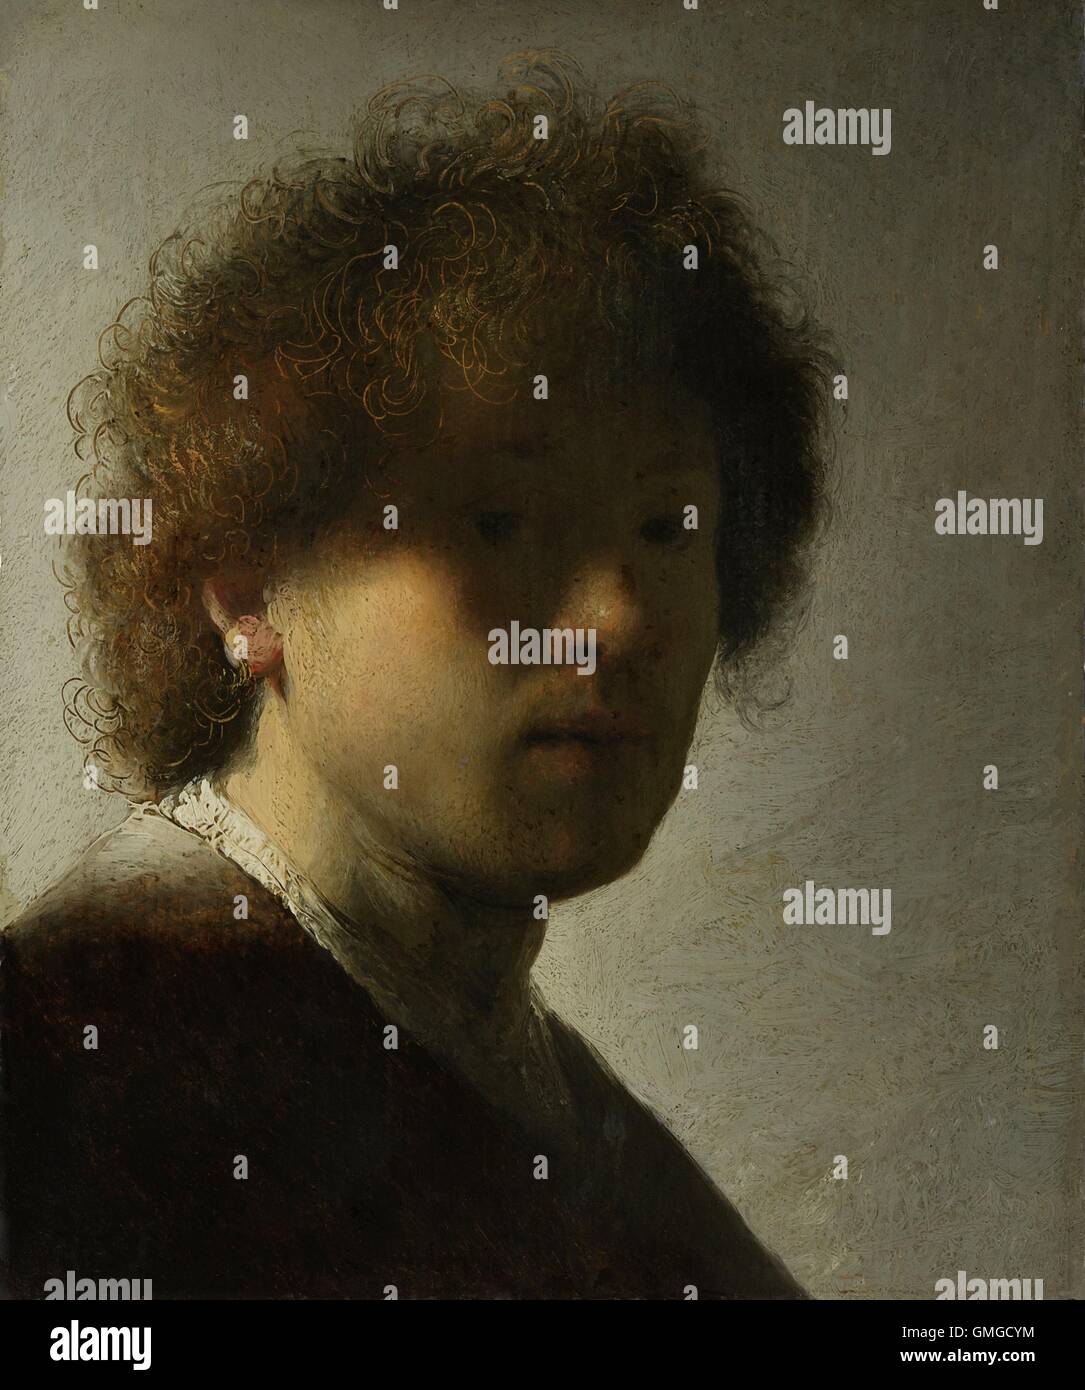 Autoportrait, d'après Rembrandt Van Rijn, 1628, la peinture hollandaise, huile sur panneau. À l'âge de 22 Rembrandt a peint cet autoportrait, de contempler l'ombre obscurcissant. Il se gratta l'intermédiaire de la peinture humide avec sa poignée de faire met en évidence dans ses cheveux (BSLOC 2016 3 6) Banque D'Images